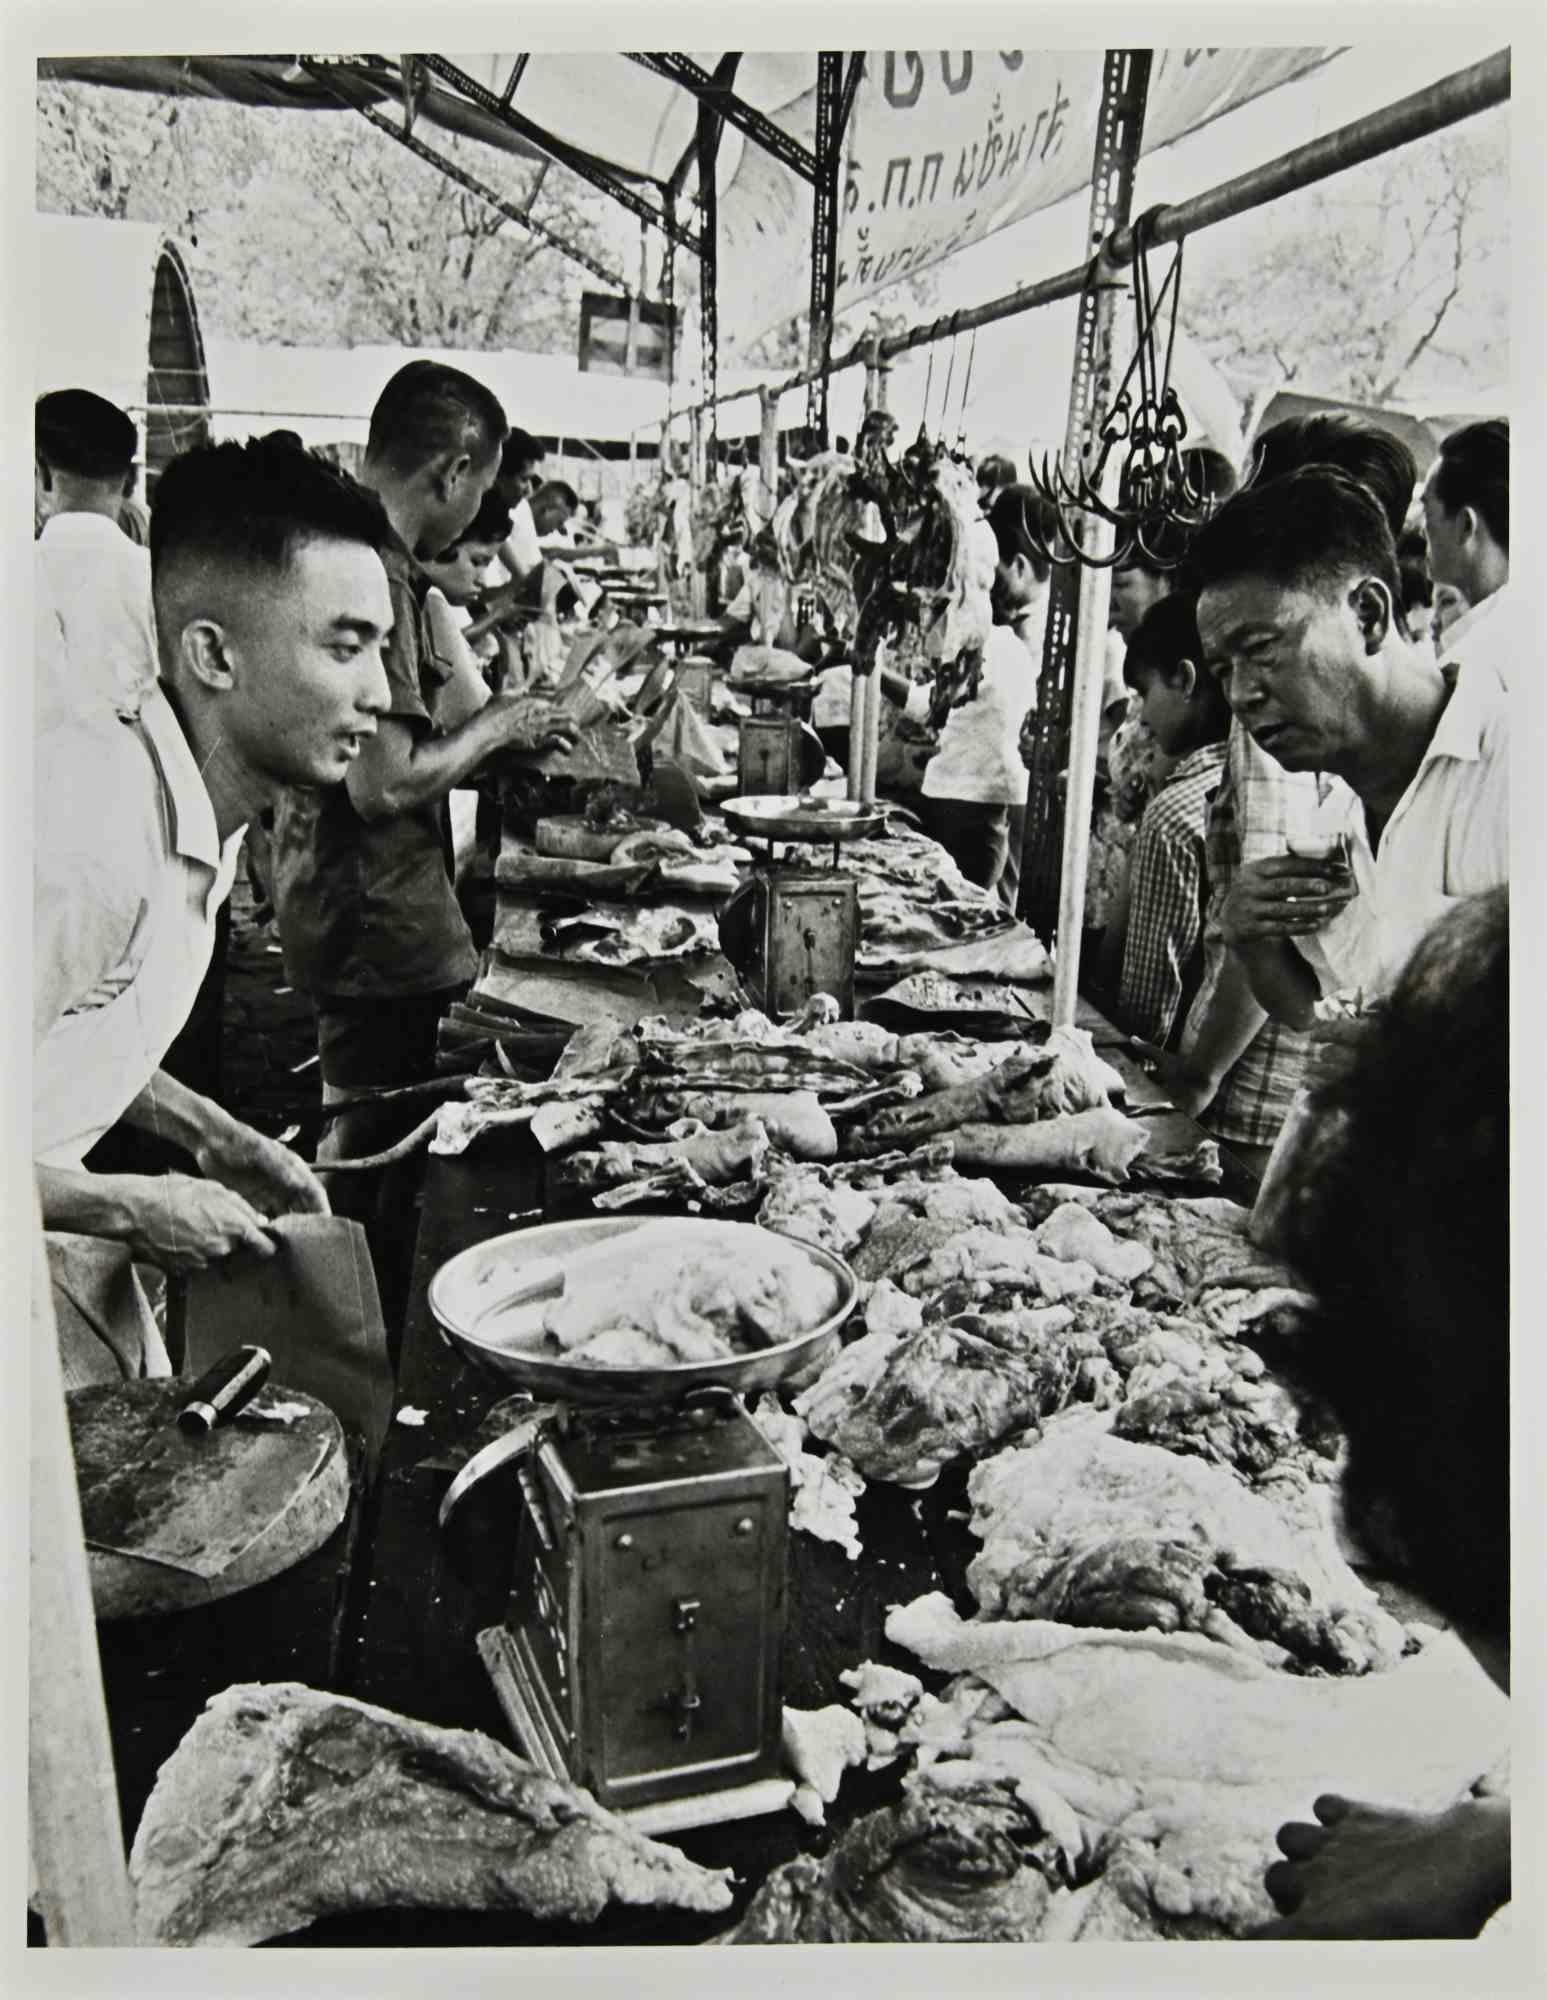 Bangkok Market - Fotoreportage ist ein Vintage s/w Foto aus den 1960er Jahren von Folco Quilici.

Gute Bedingungen.

Auf der Rückseite gestempelt.